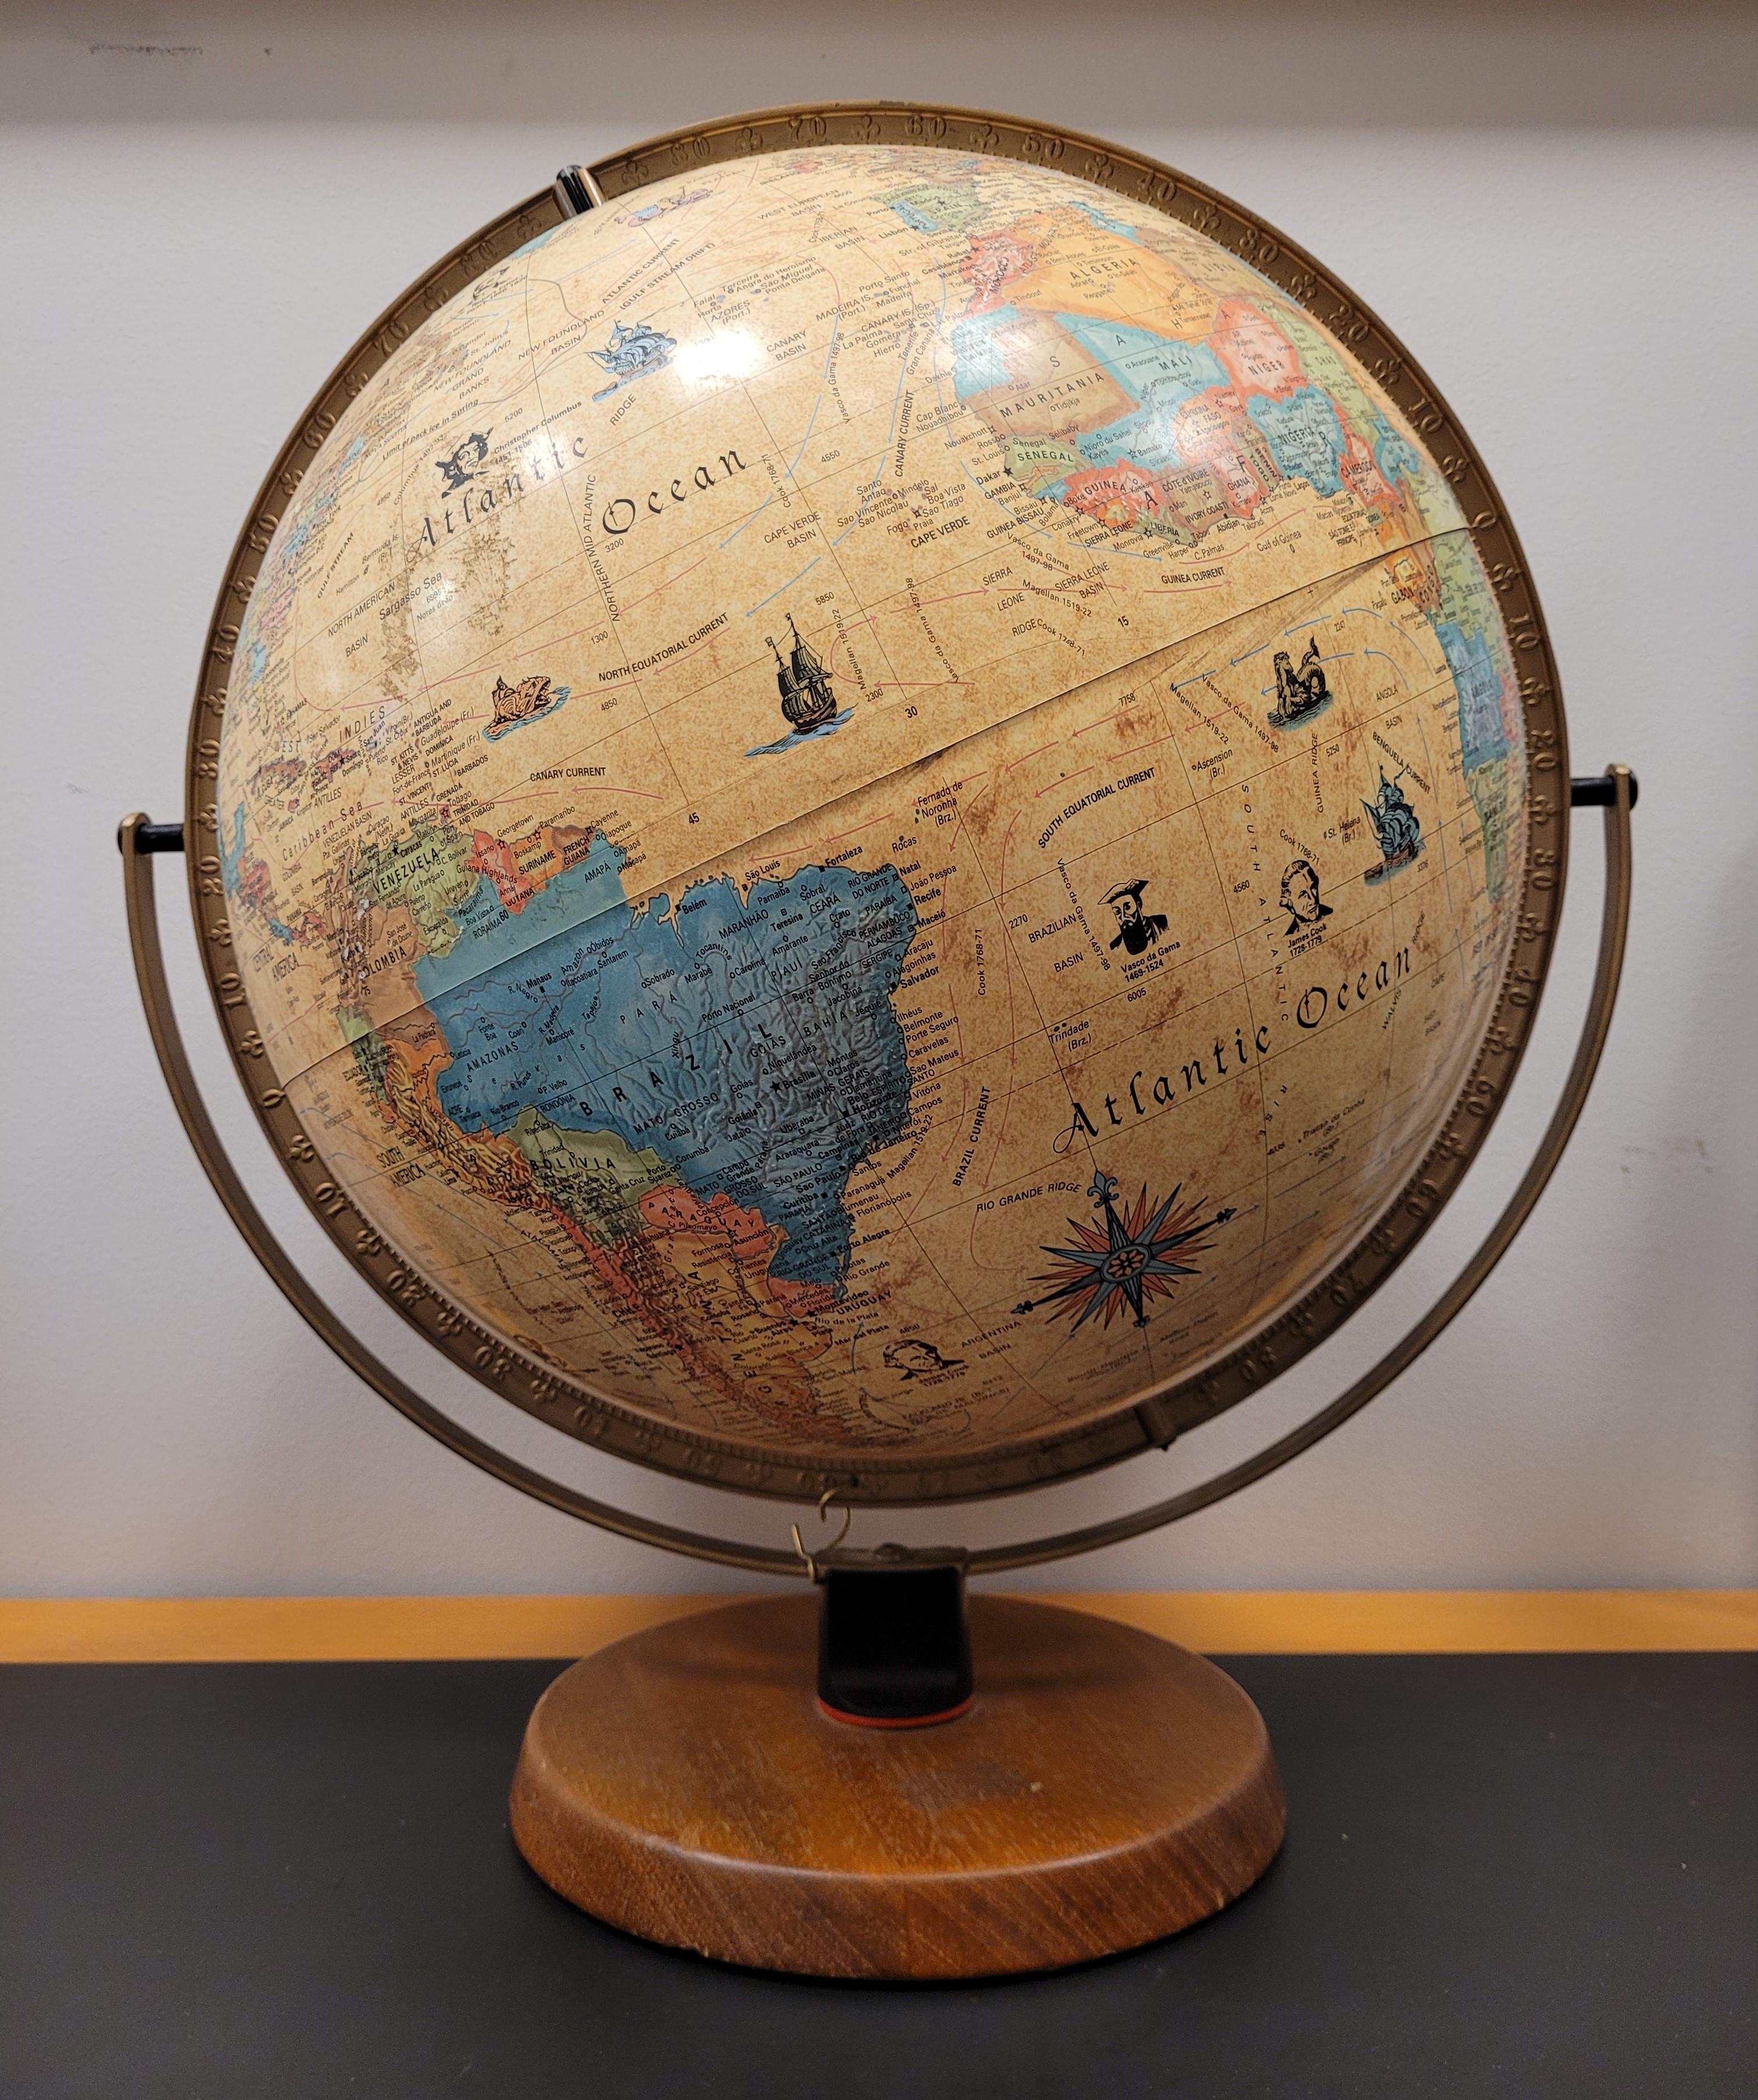 Schöne Vintage dänischen Welt rotierenden Globus aus den 50er Jahren. Vintage By Weltkugel von Scan-Globe A/S. Vintage Desk Dekorative Weltkugel.
Der Ballon ist groß, mit einem Durchmesser von ca. 54 cm (siehe Maße nach der Beschreibung). Der Ballon